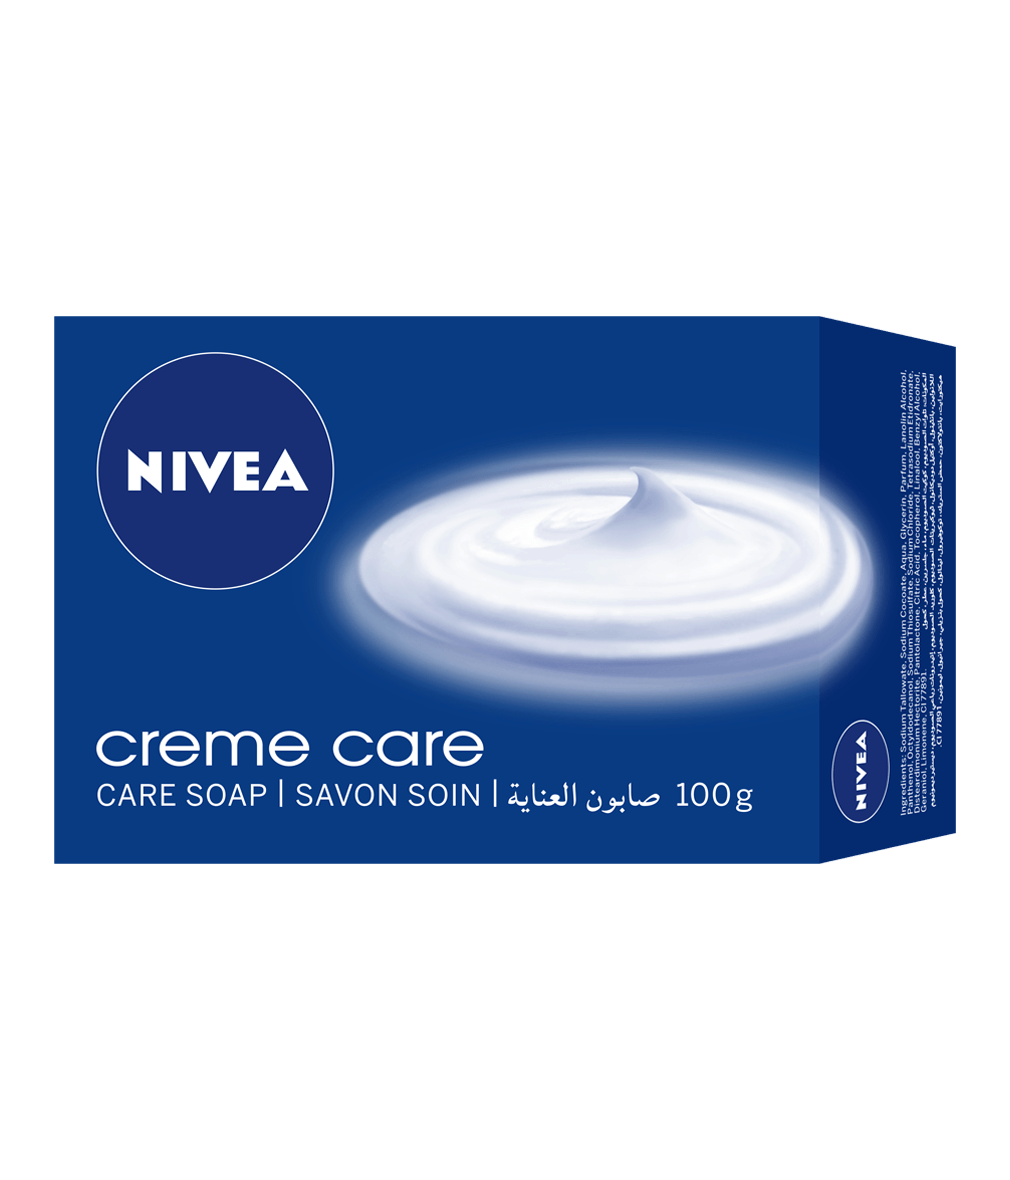 82408 NIVEA Creme Care Bar Soap 100g clean packshot bi-lingual